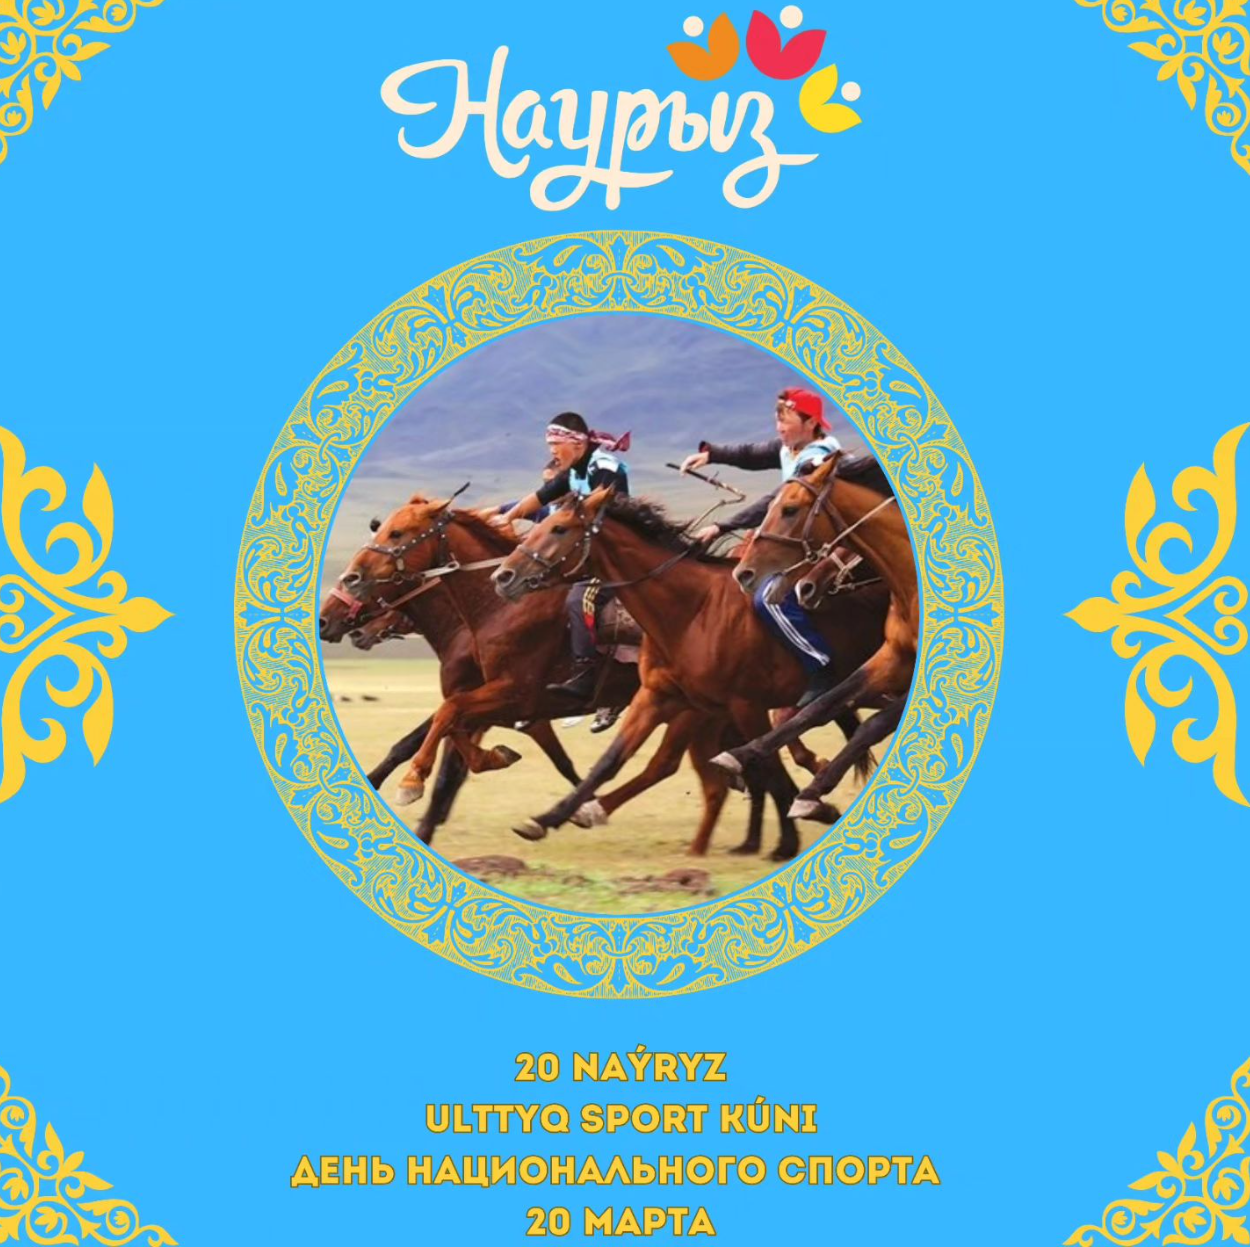 20 марта – Ұлттық спорт күні. В этот день во всех регионах Казахстана проводятся различные соревнования и турниры по национальным видам спорта.